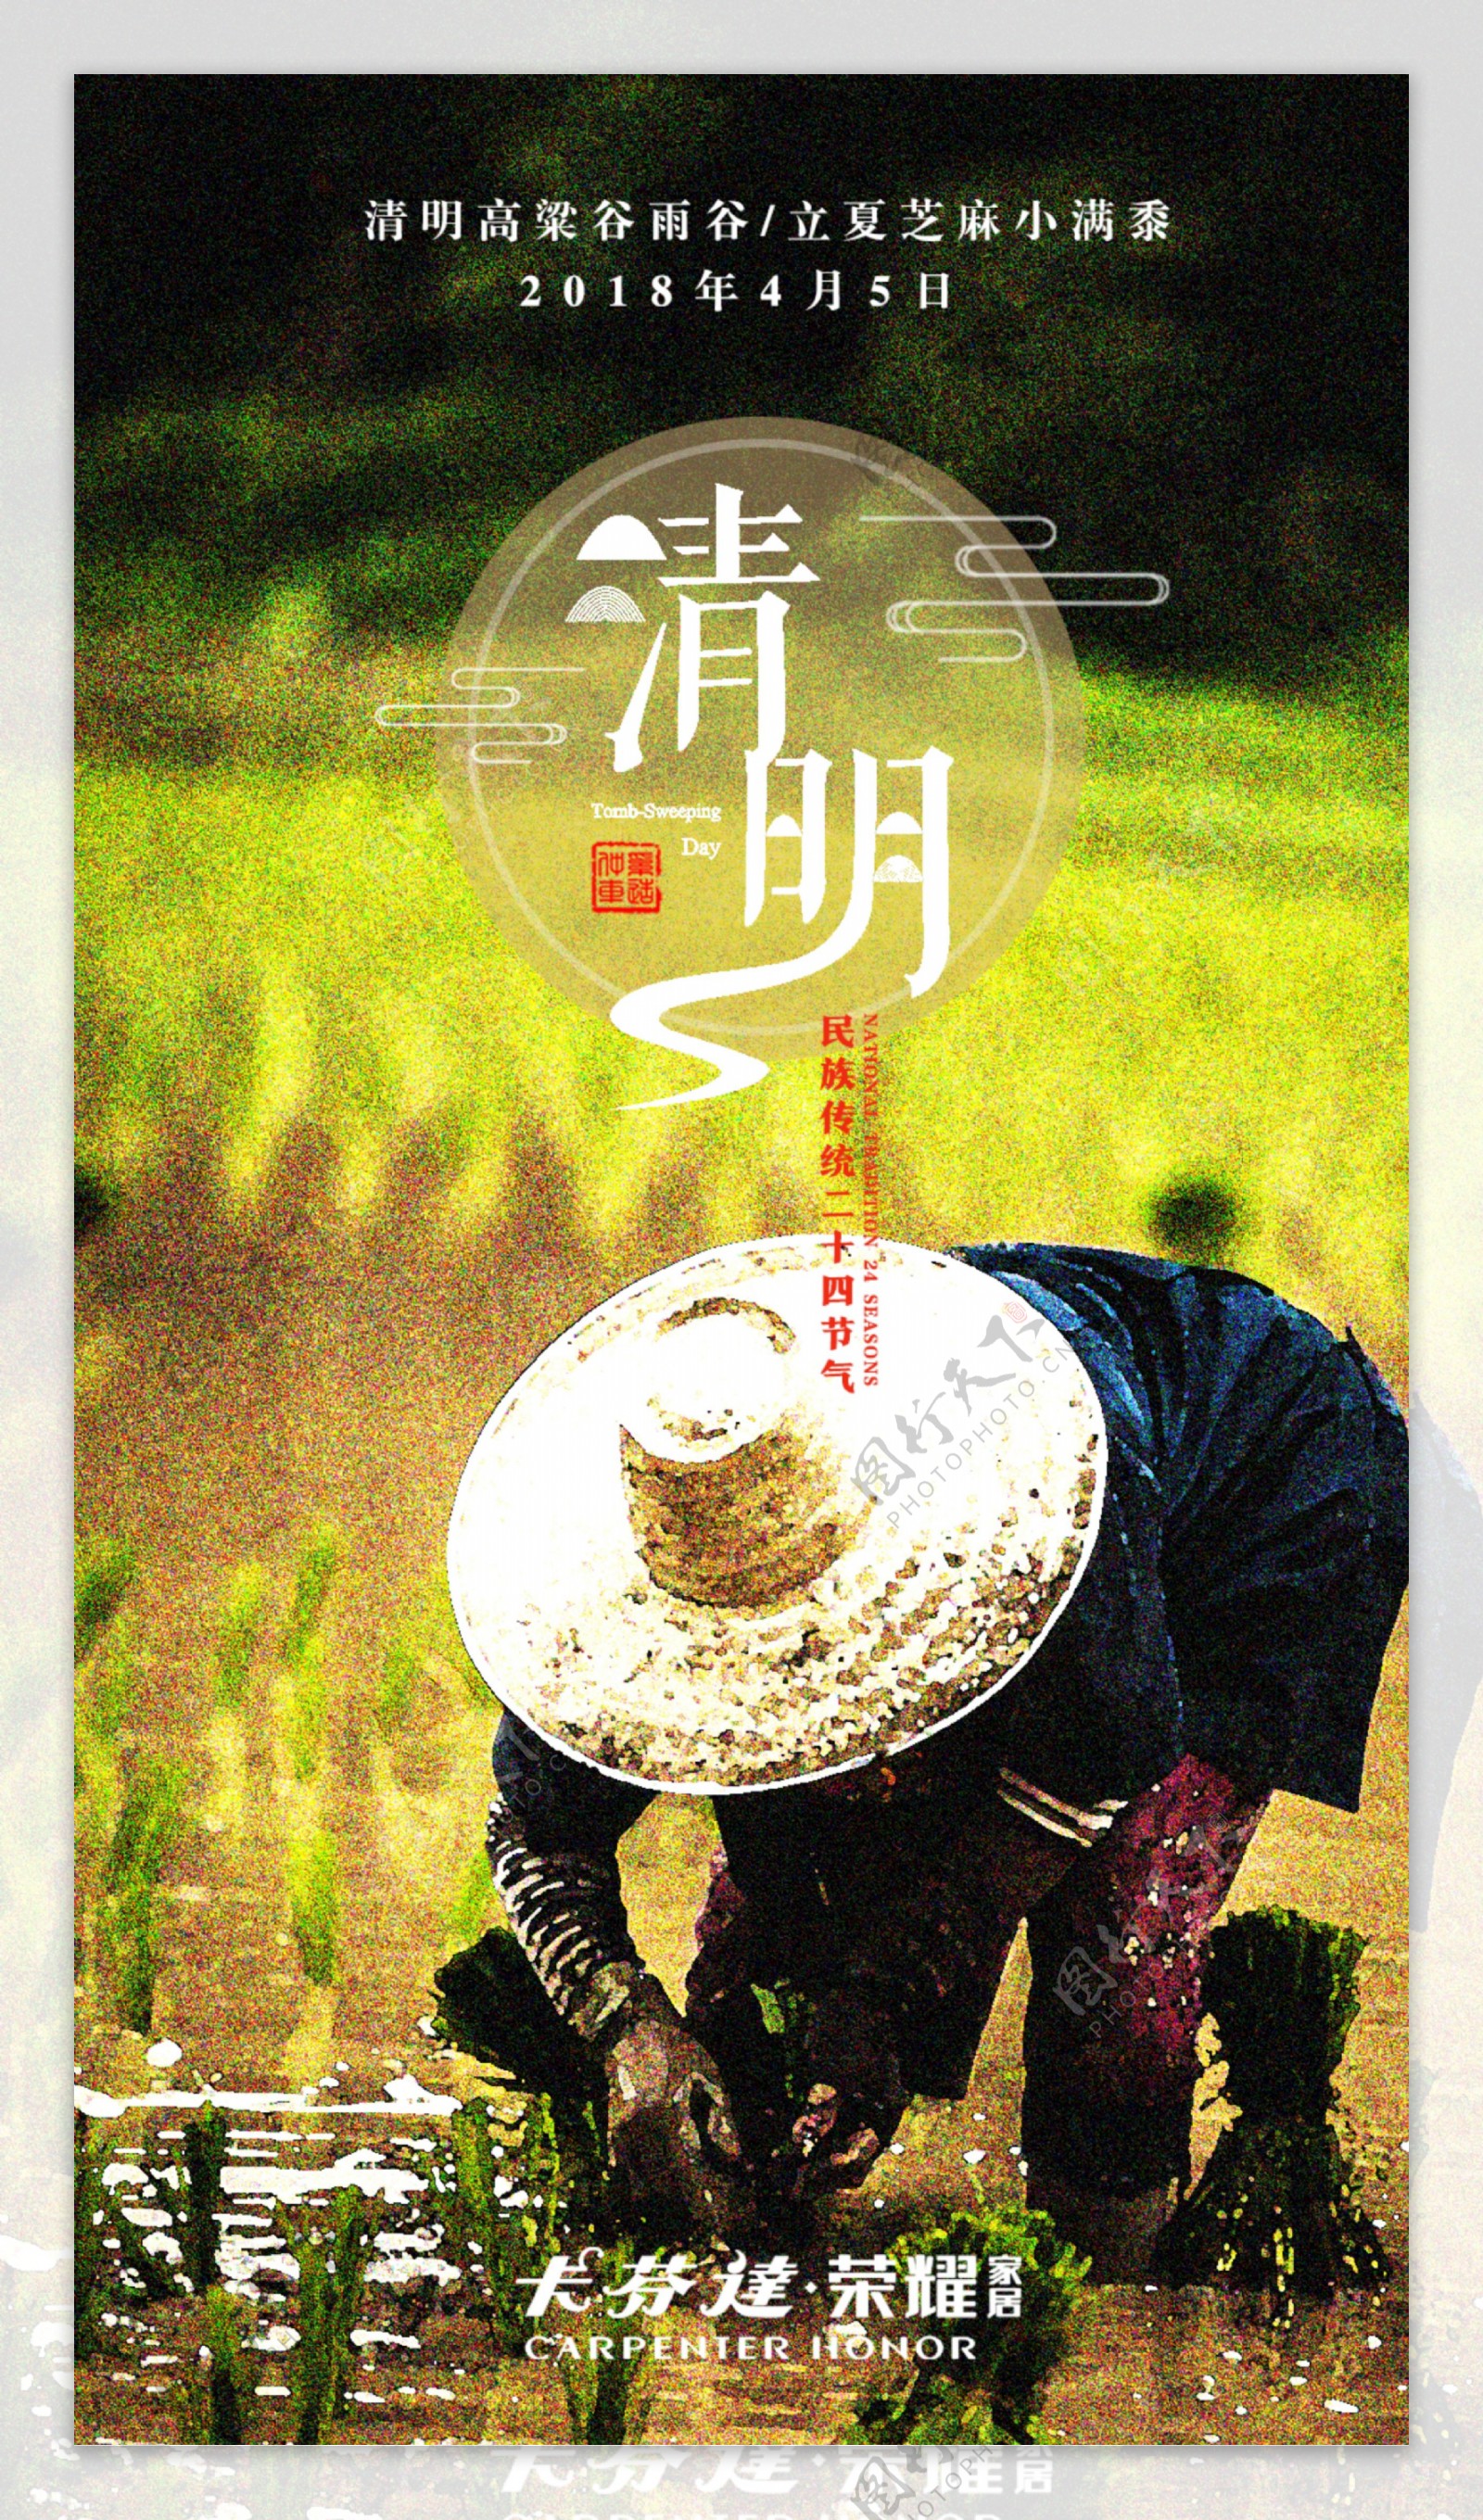 清明节节日海报